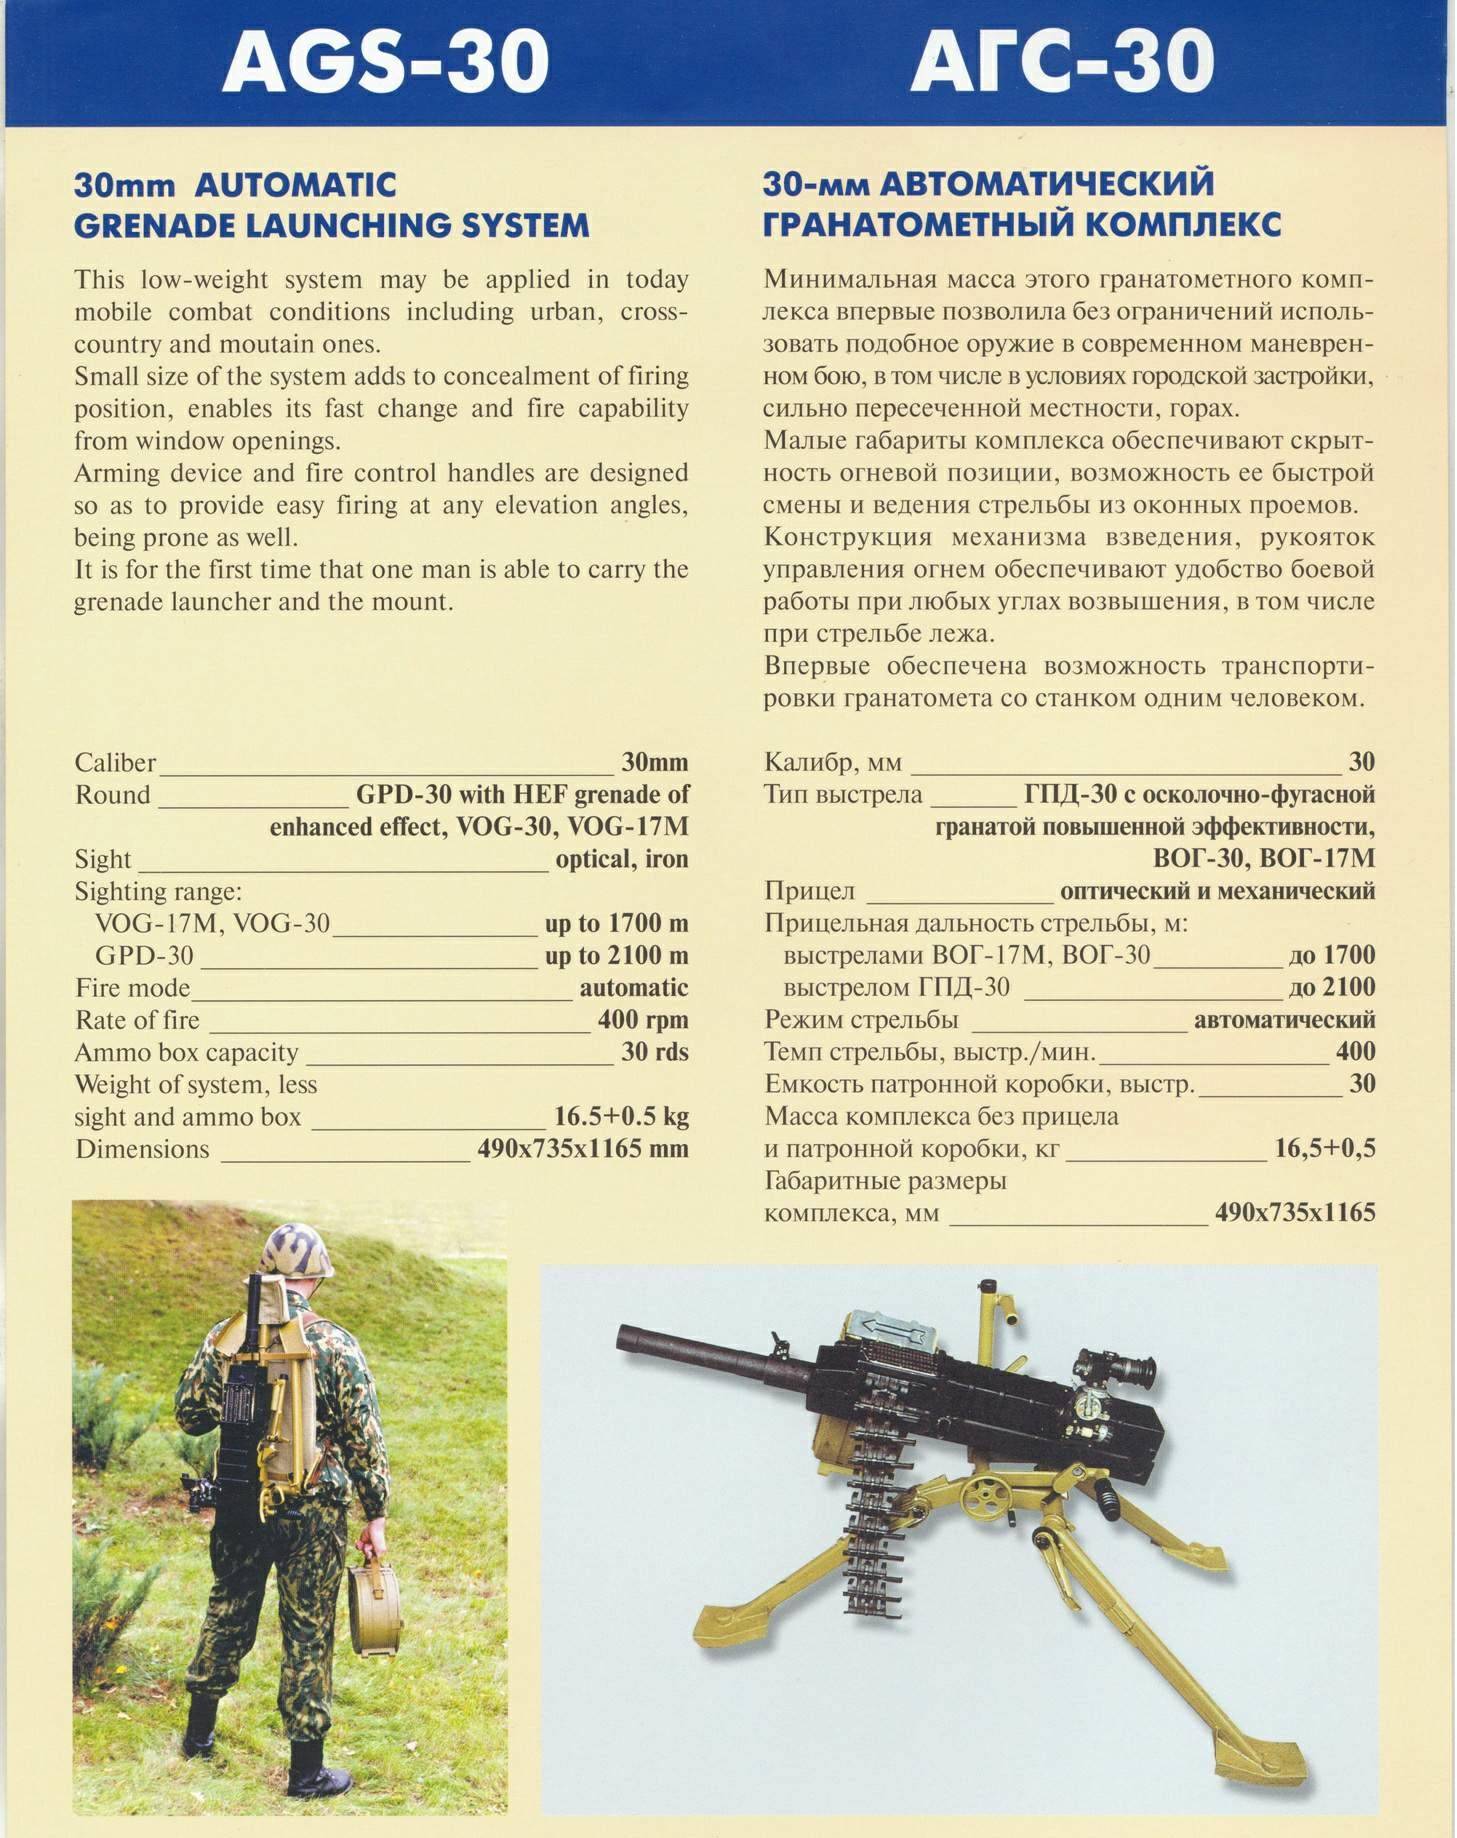 Агс-30 пламя, описание и ттх автоматического станкового гранатомета, состав расчета и правила стрельбы, калибр и модификации боеприпасов